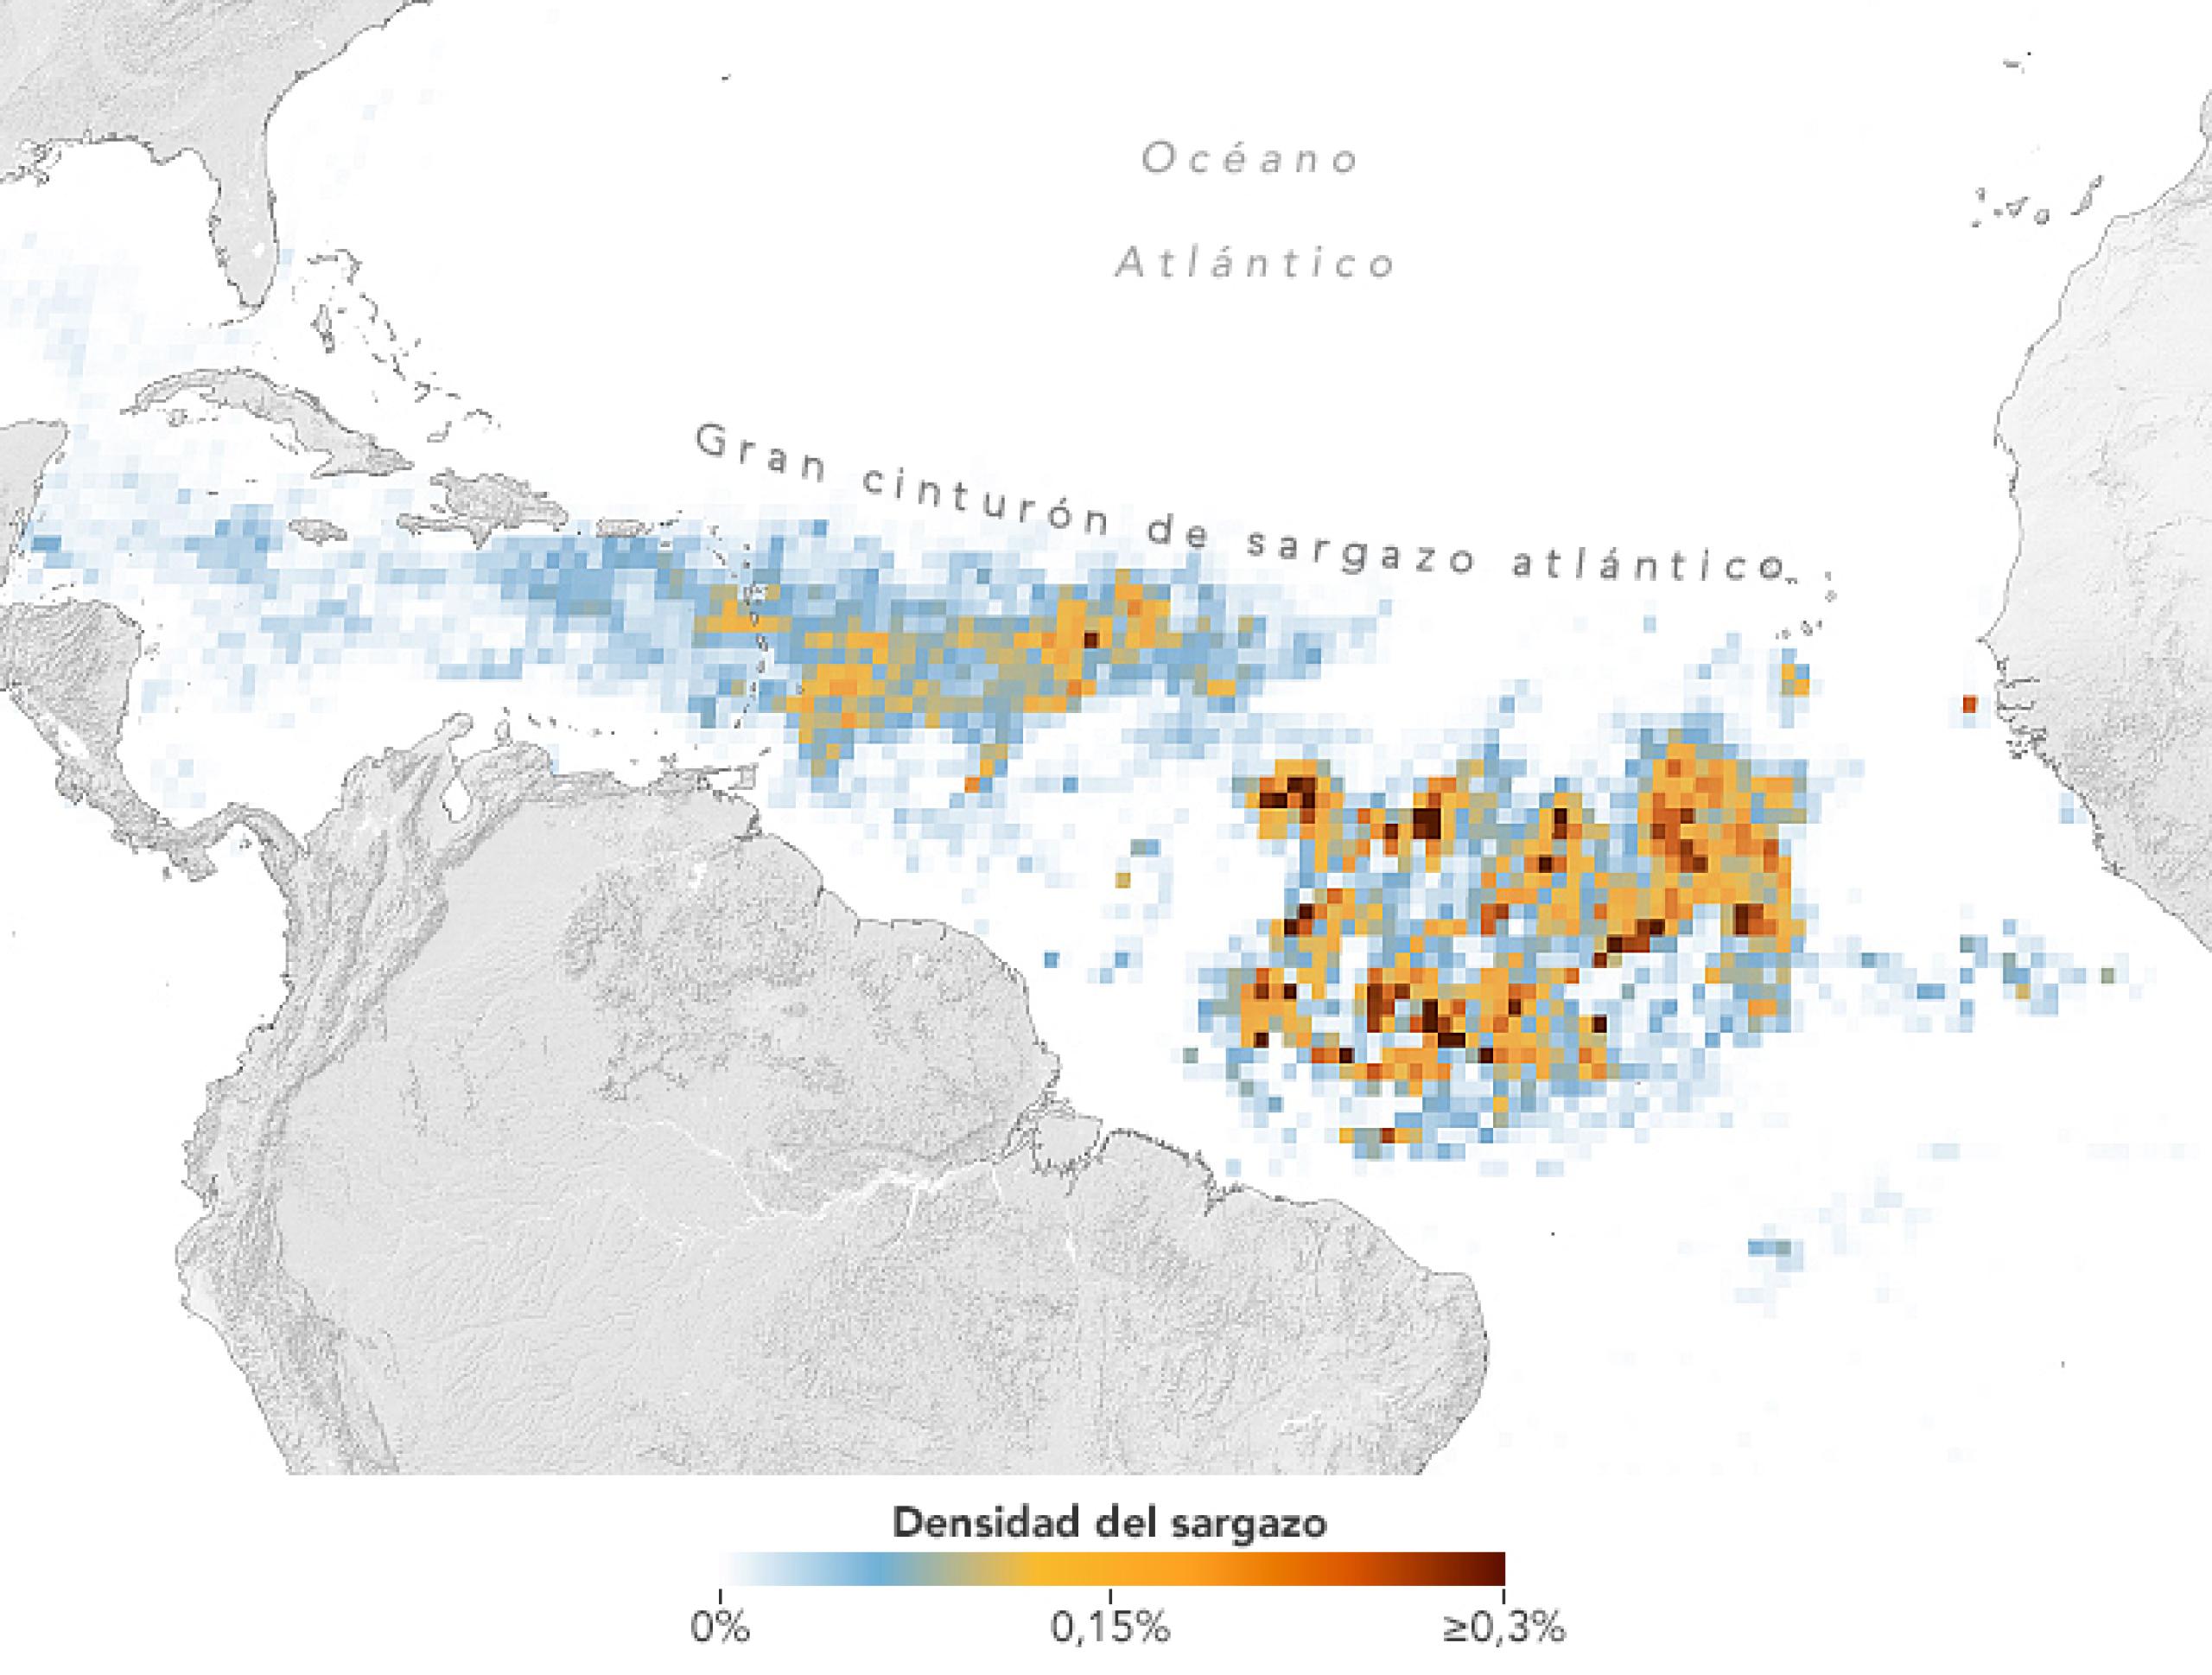 Enorme proliferación de algas marinas en el Atlántico